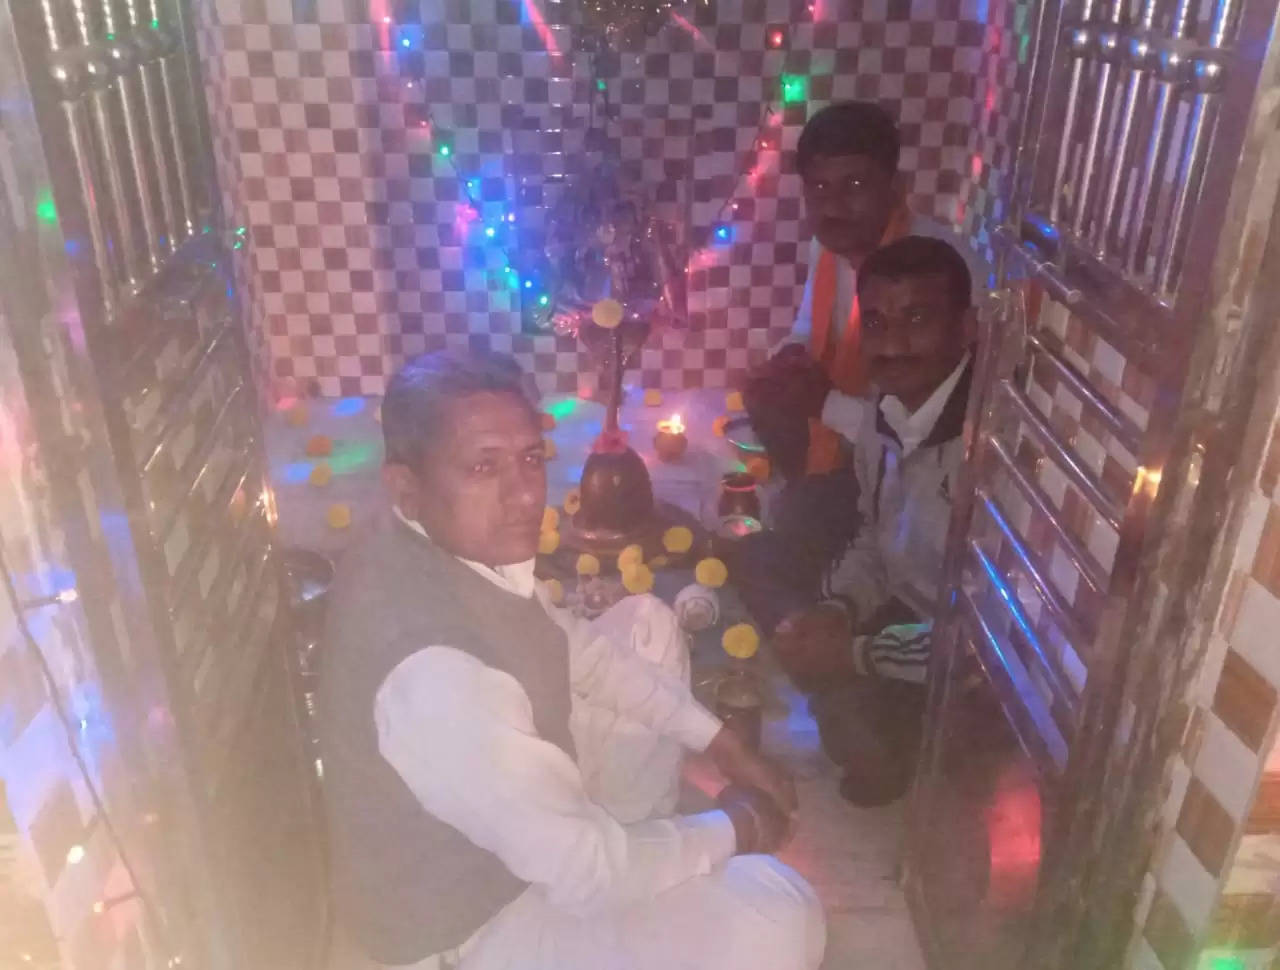 ધાર્મિક@કાંકરેજ: મહા શિવરાત્રિએ શિવધામમાં ભજન-સત્સંગ કાર્યક્રમ યોજાયો